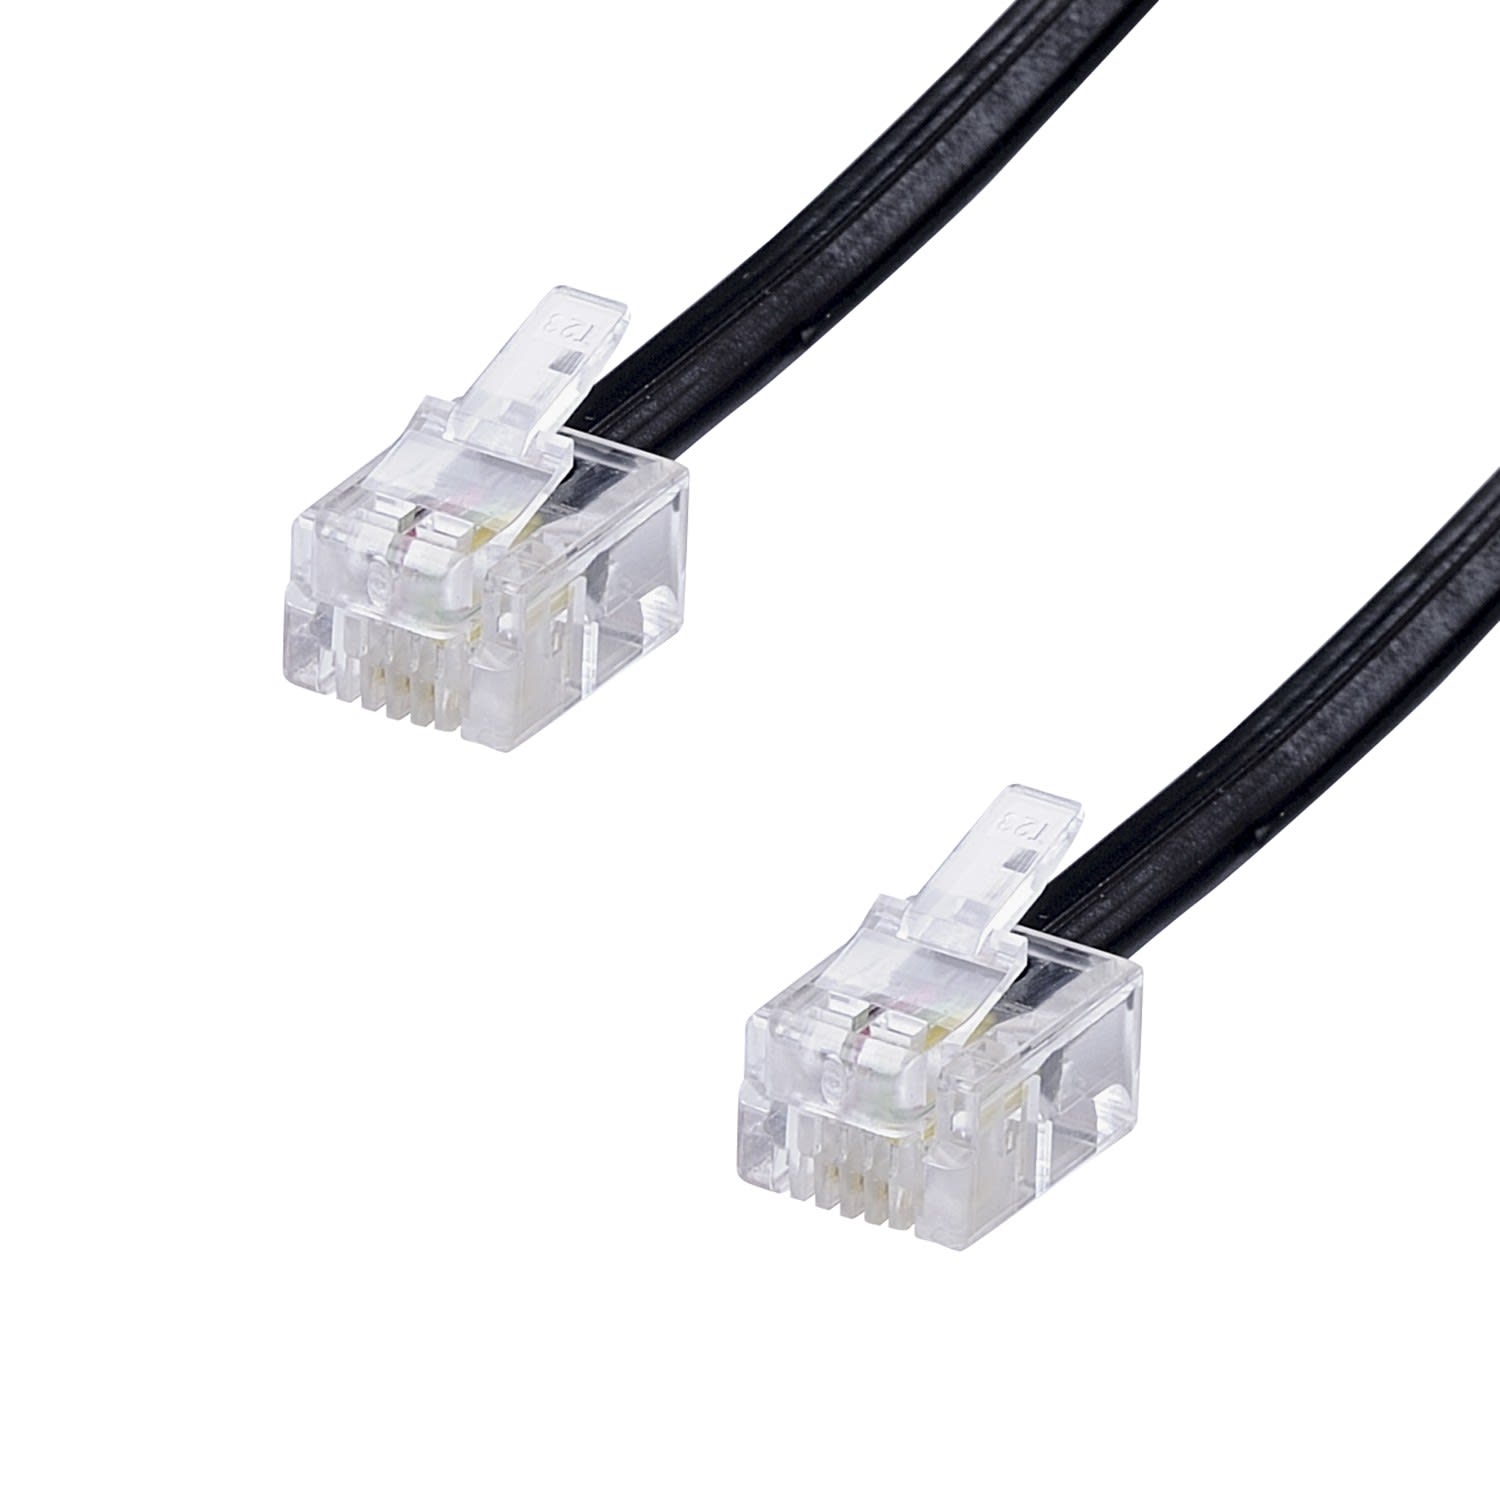 Erard - Cordon RJ11 - 2m - M/M - haut-débit ADSL - gaine pvc plate noire